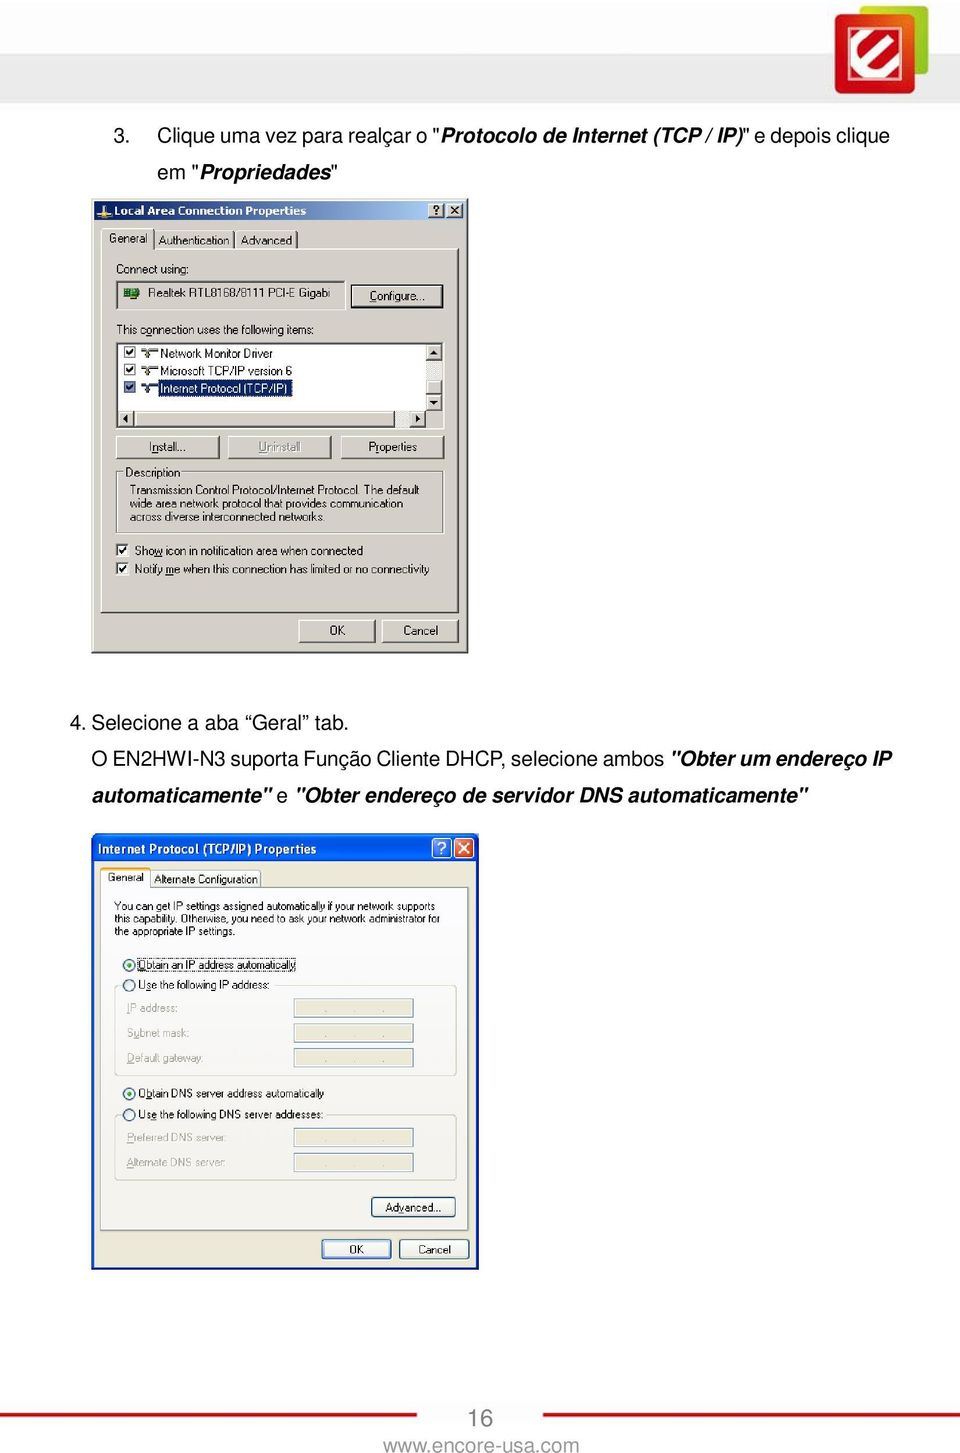 O EN2HWI-N3 suporta Função Cliente DHCP, selecione ambos "Obter um